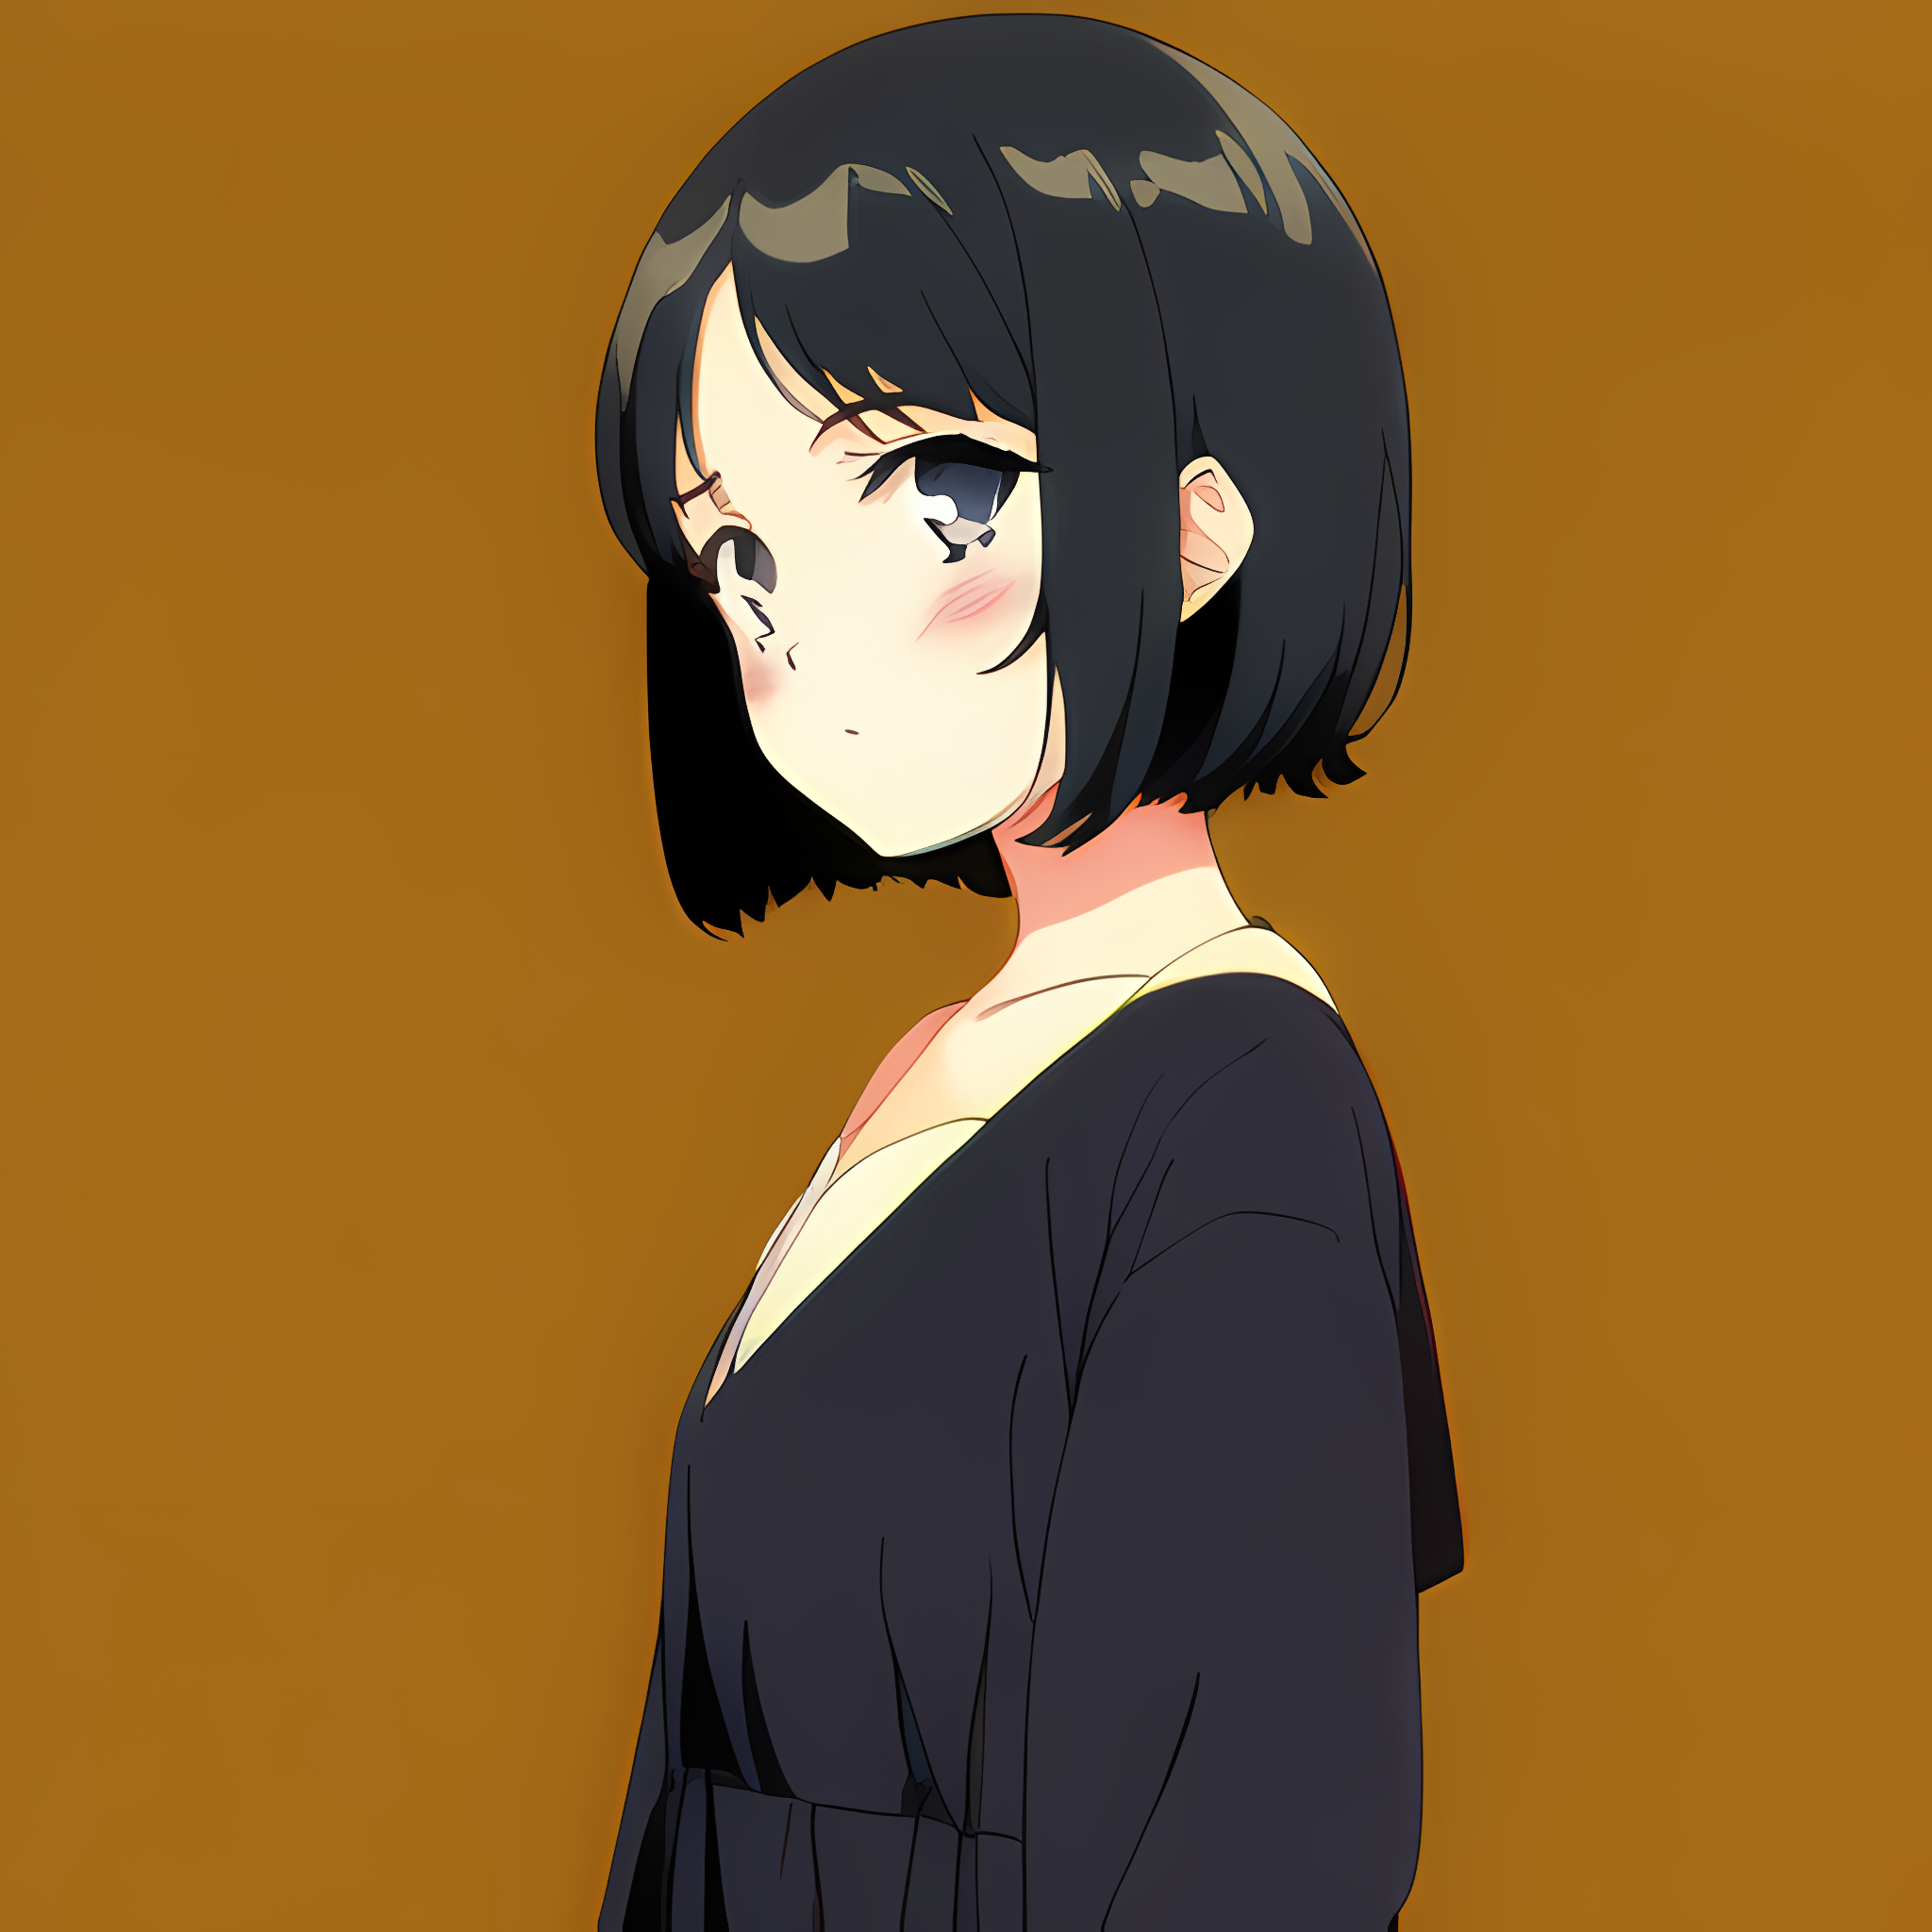 𝘉𝘭𝘢𝘤𝘬 𝘏𝘢𝘪𝘳𝘦𝘥 𝘎𝘪𝘳𝘭𝘴 | Anime Amino